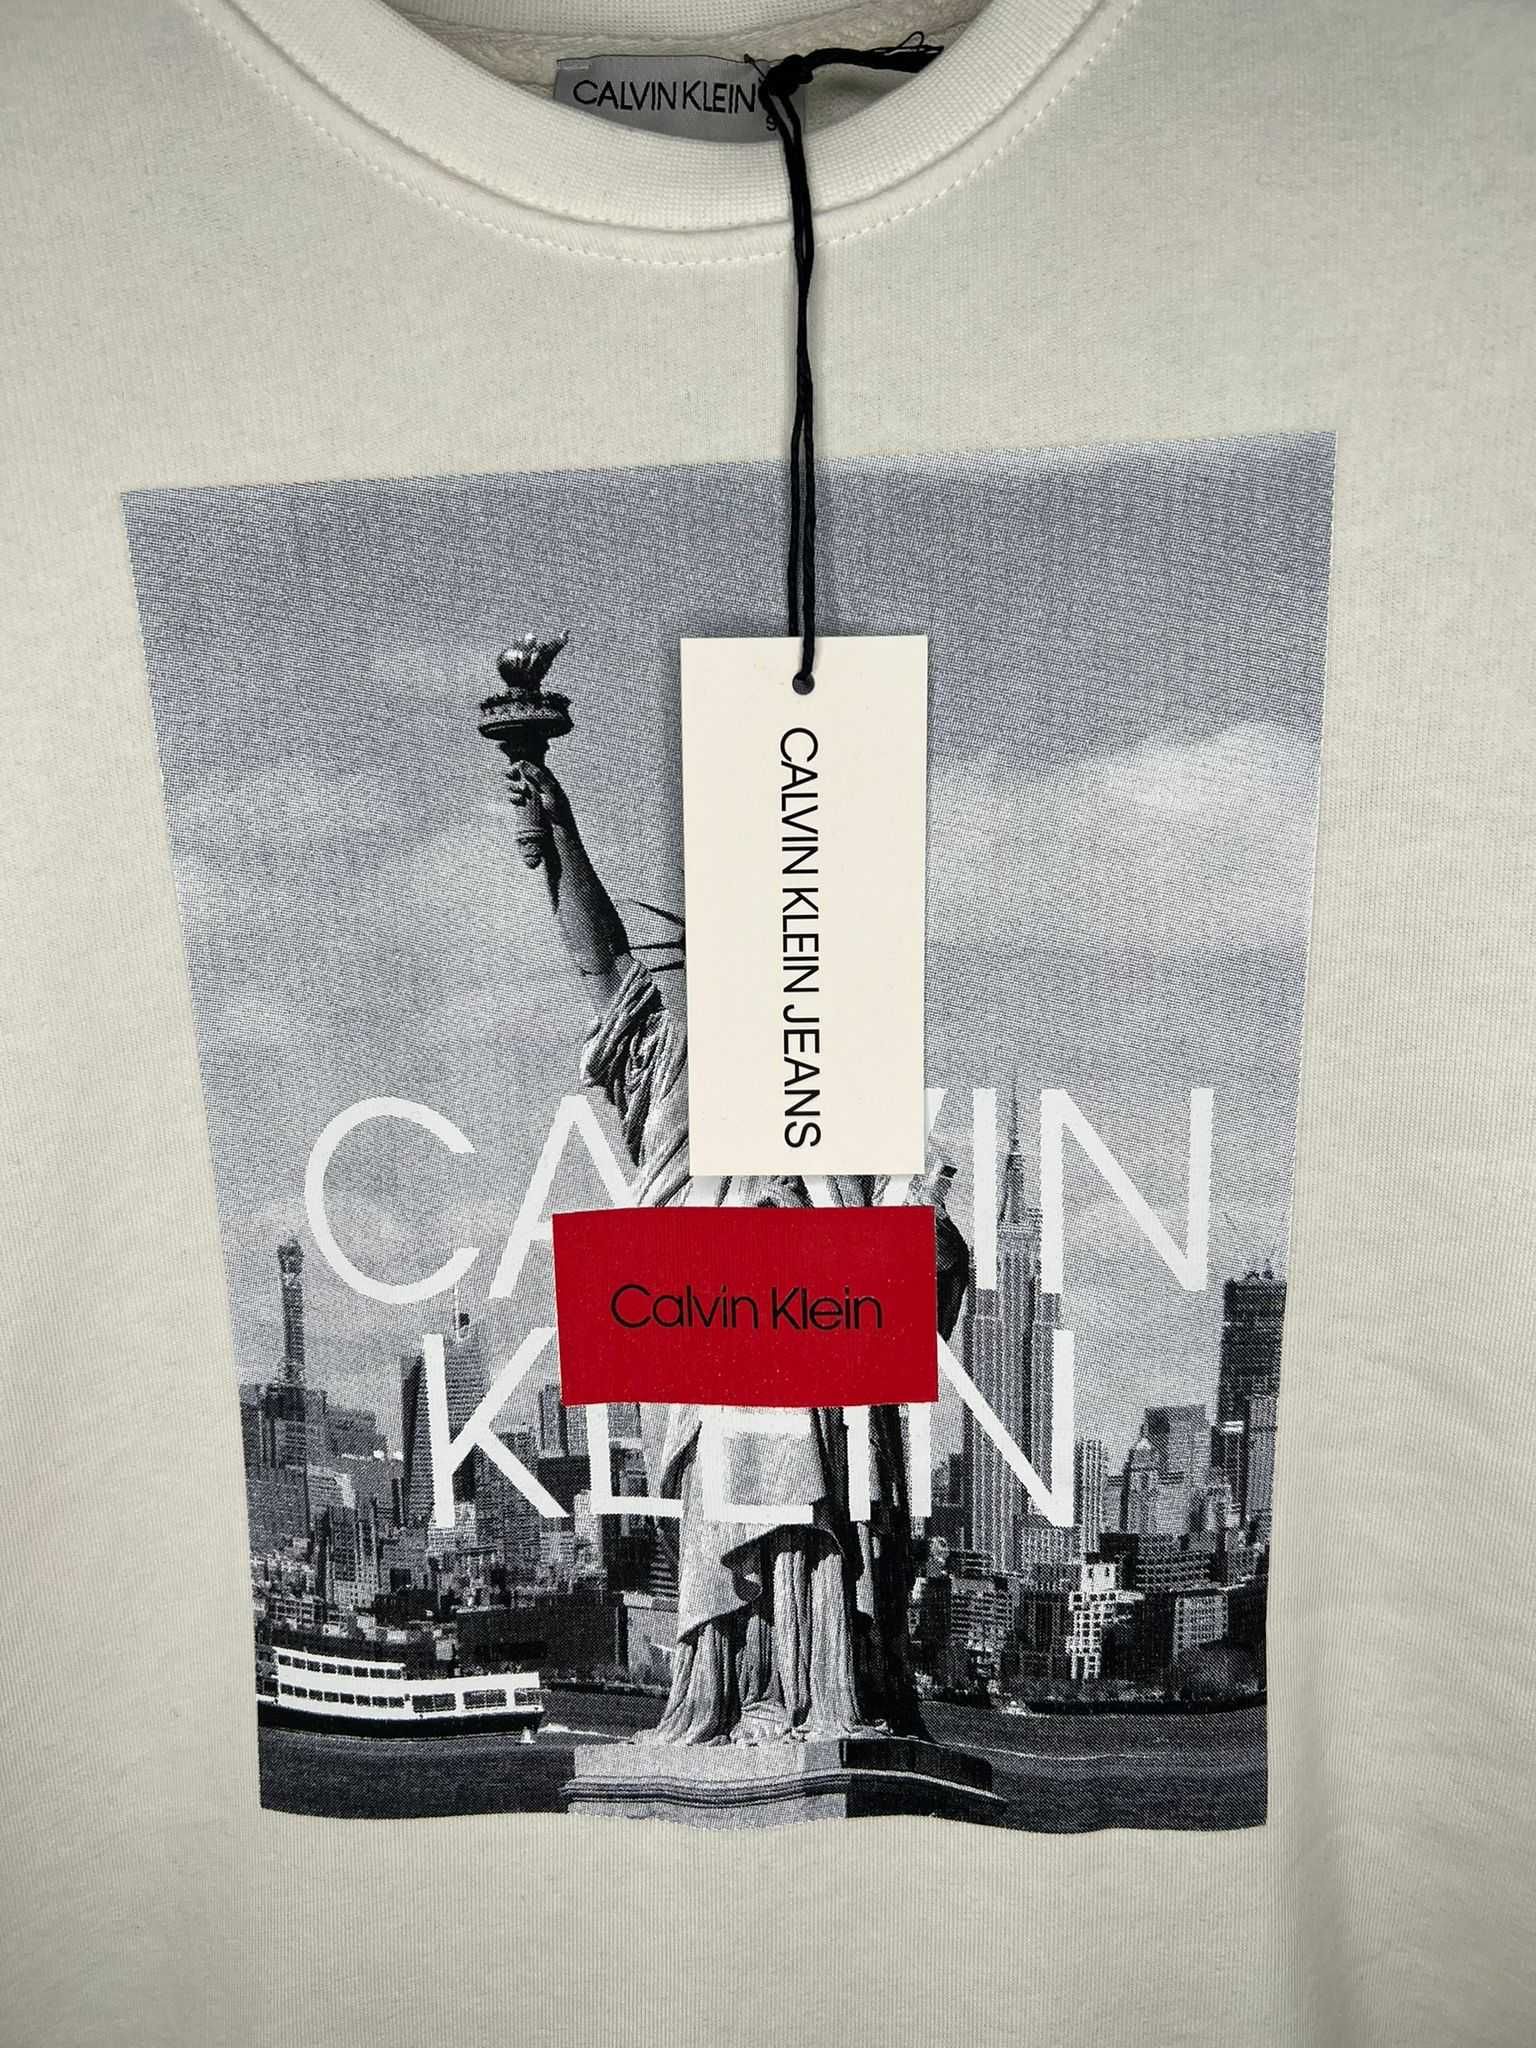 Bluza Calvin Klein cu imprimeu / Bluza Nike Air cu imprimeu funny.